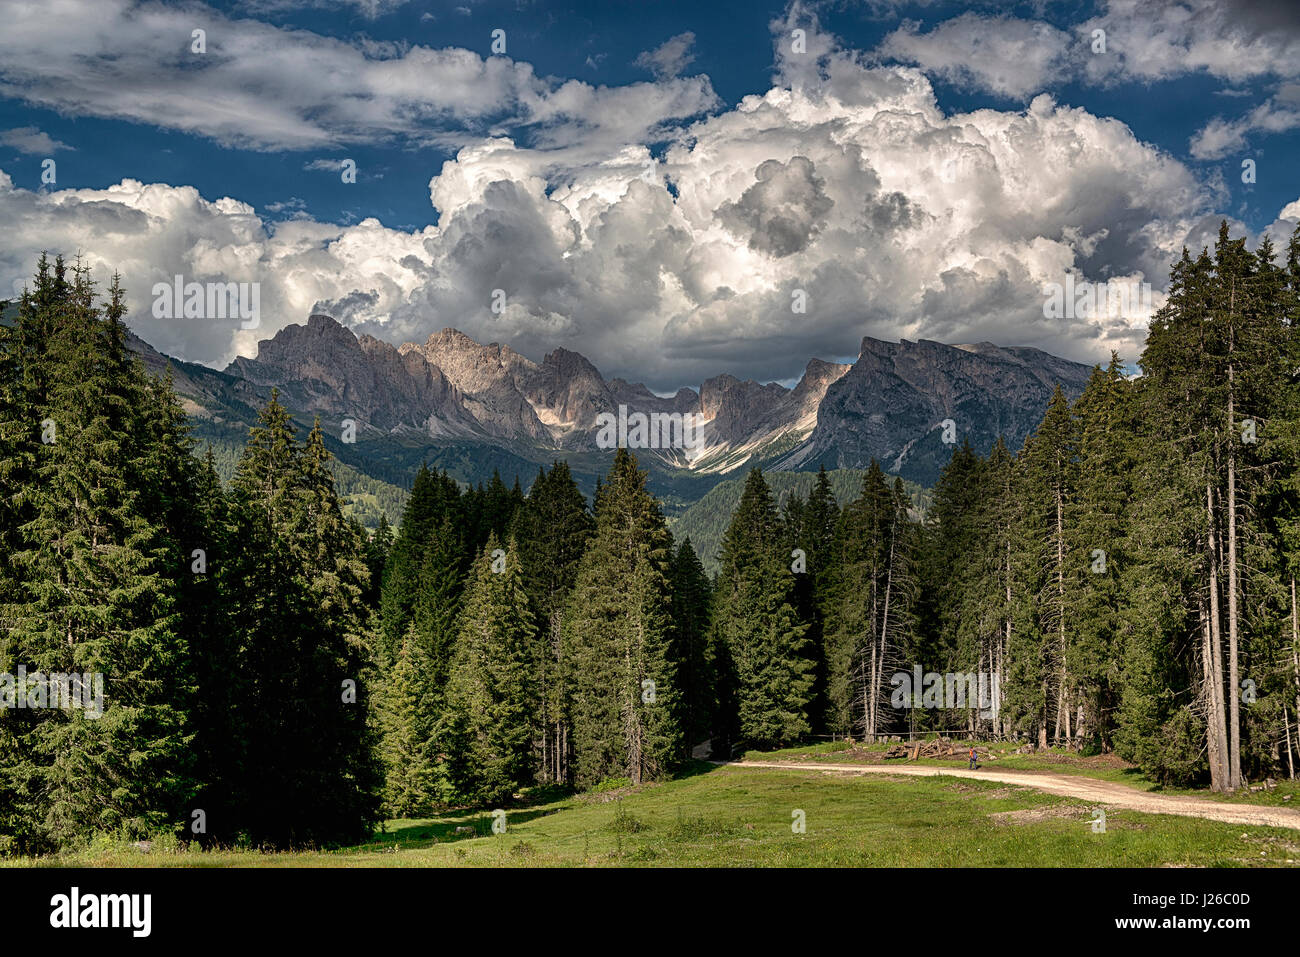 Sommerlandschaft in den italienischen Alpen mit Wolken über den Bergen Geisler, Dolomiti - Trentino-Alto Adige Stockfoto